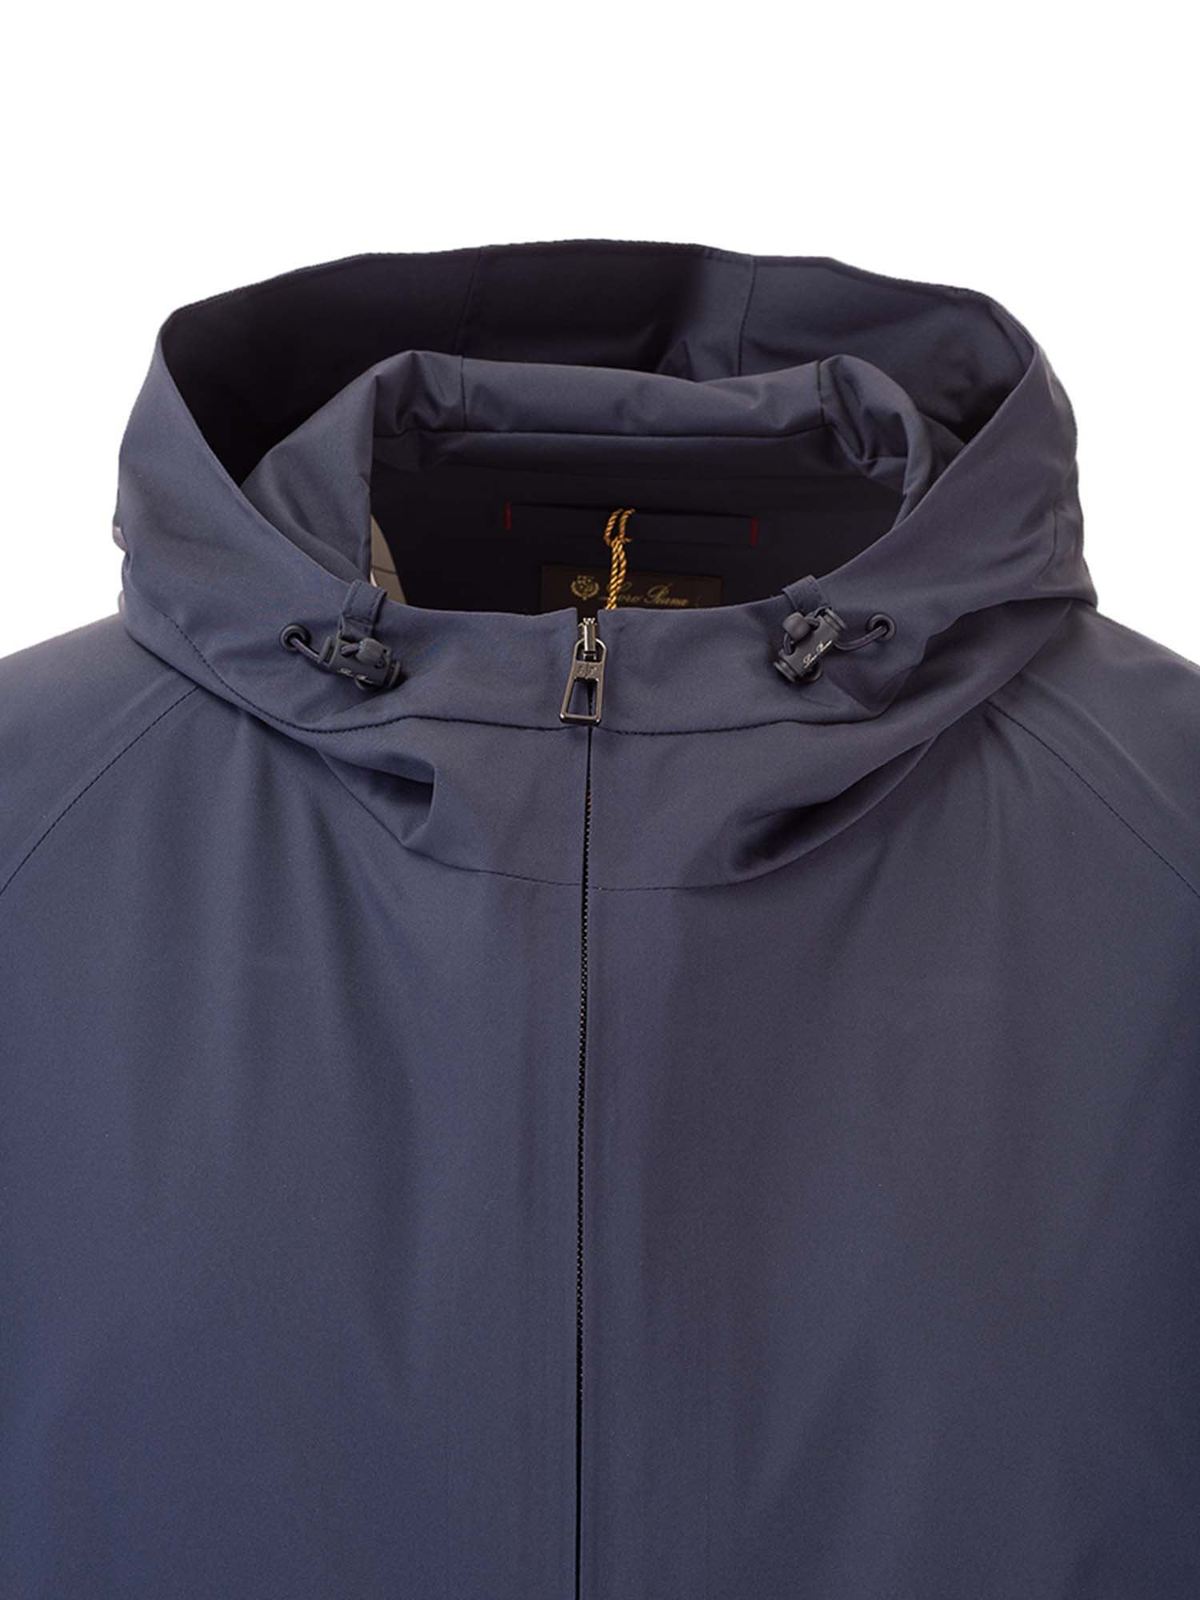 Bombers Loro Piana - Hooded bomber jacket in navy blue - FAL0954W000